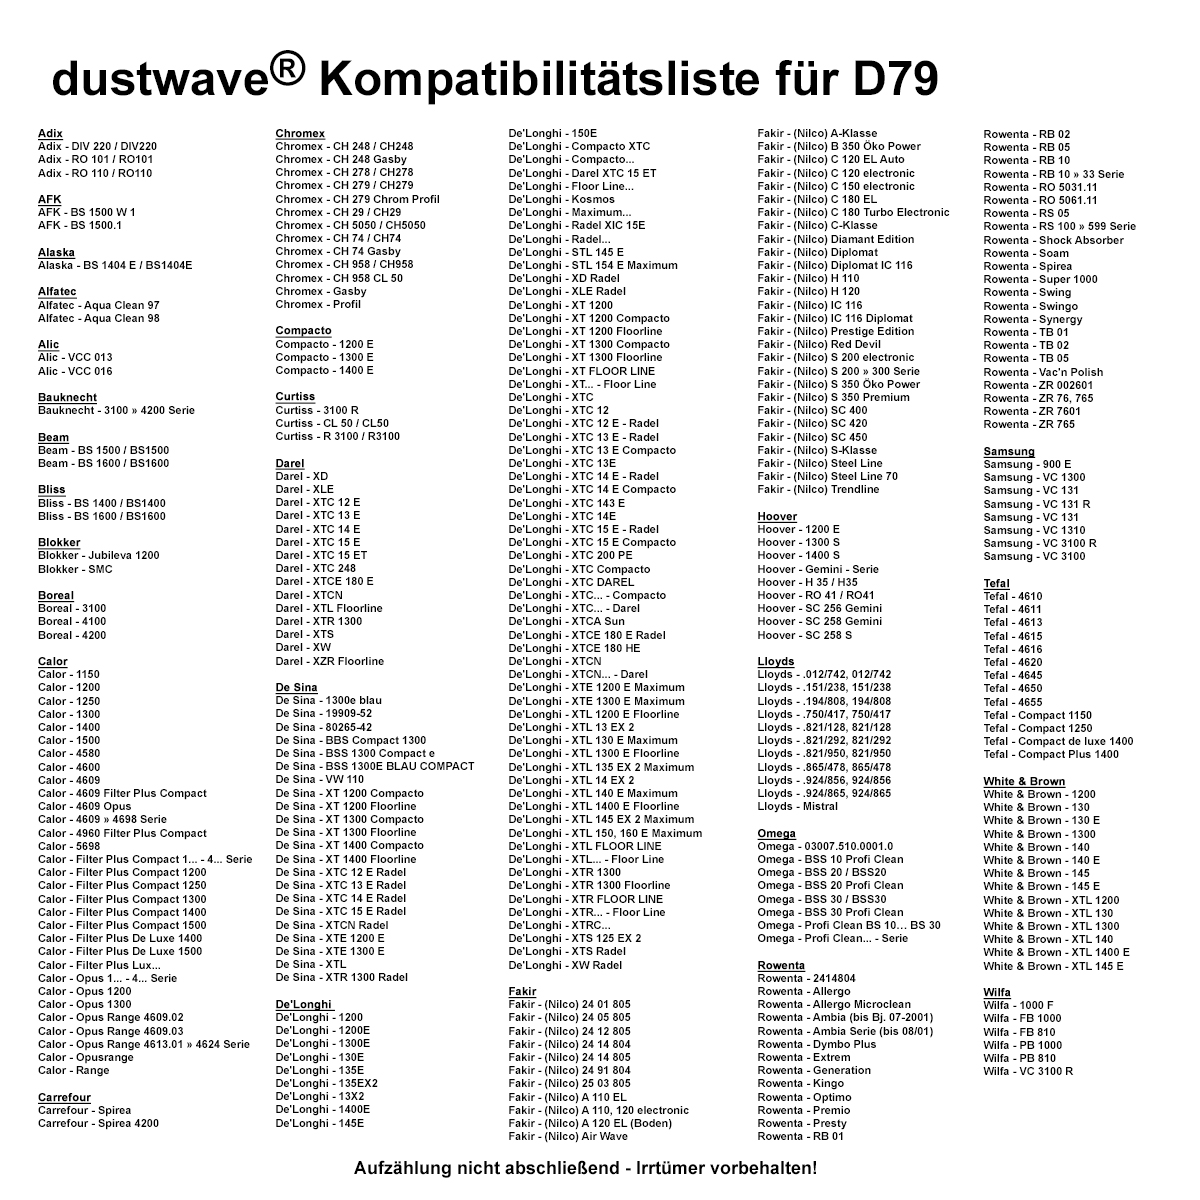 Dustwave® 1 Staubsaugerbeutel für Bliss BS 1400 / BS1400 - hocheffizient, mehrlagiges Mikrovlies mit Hygieneverschluss - Made in Germany